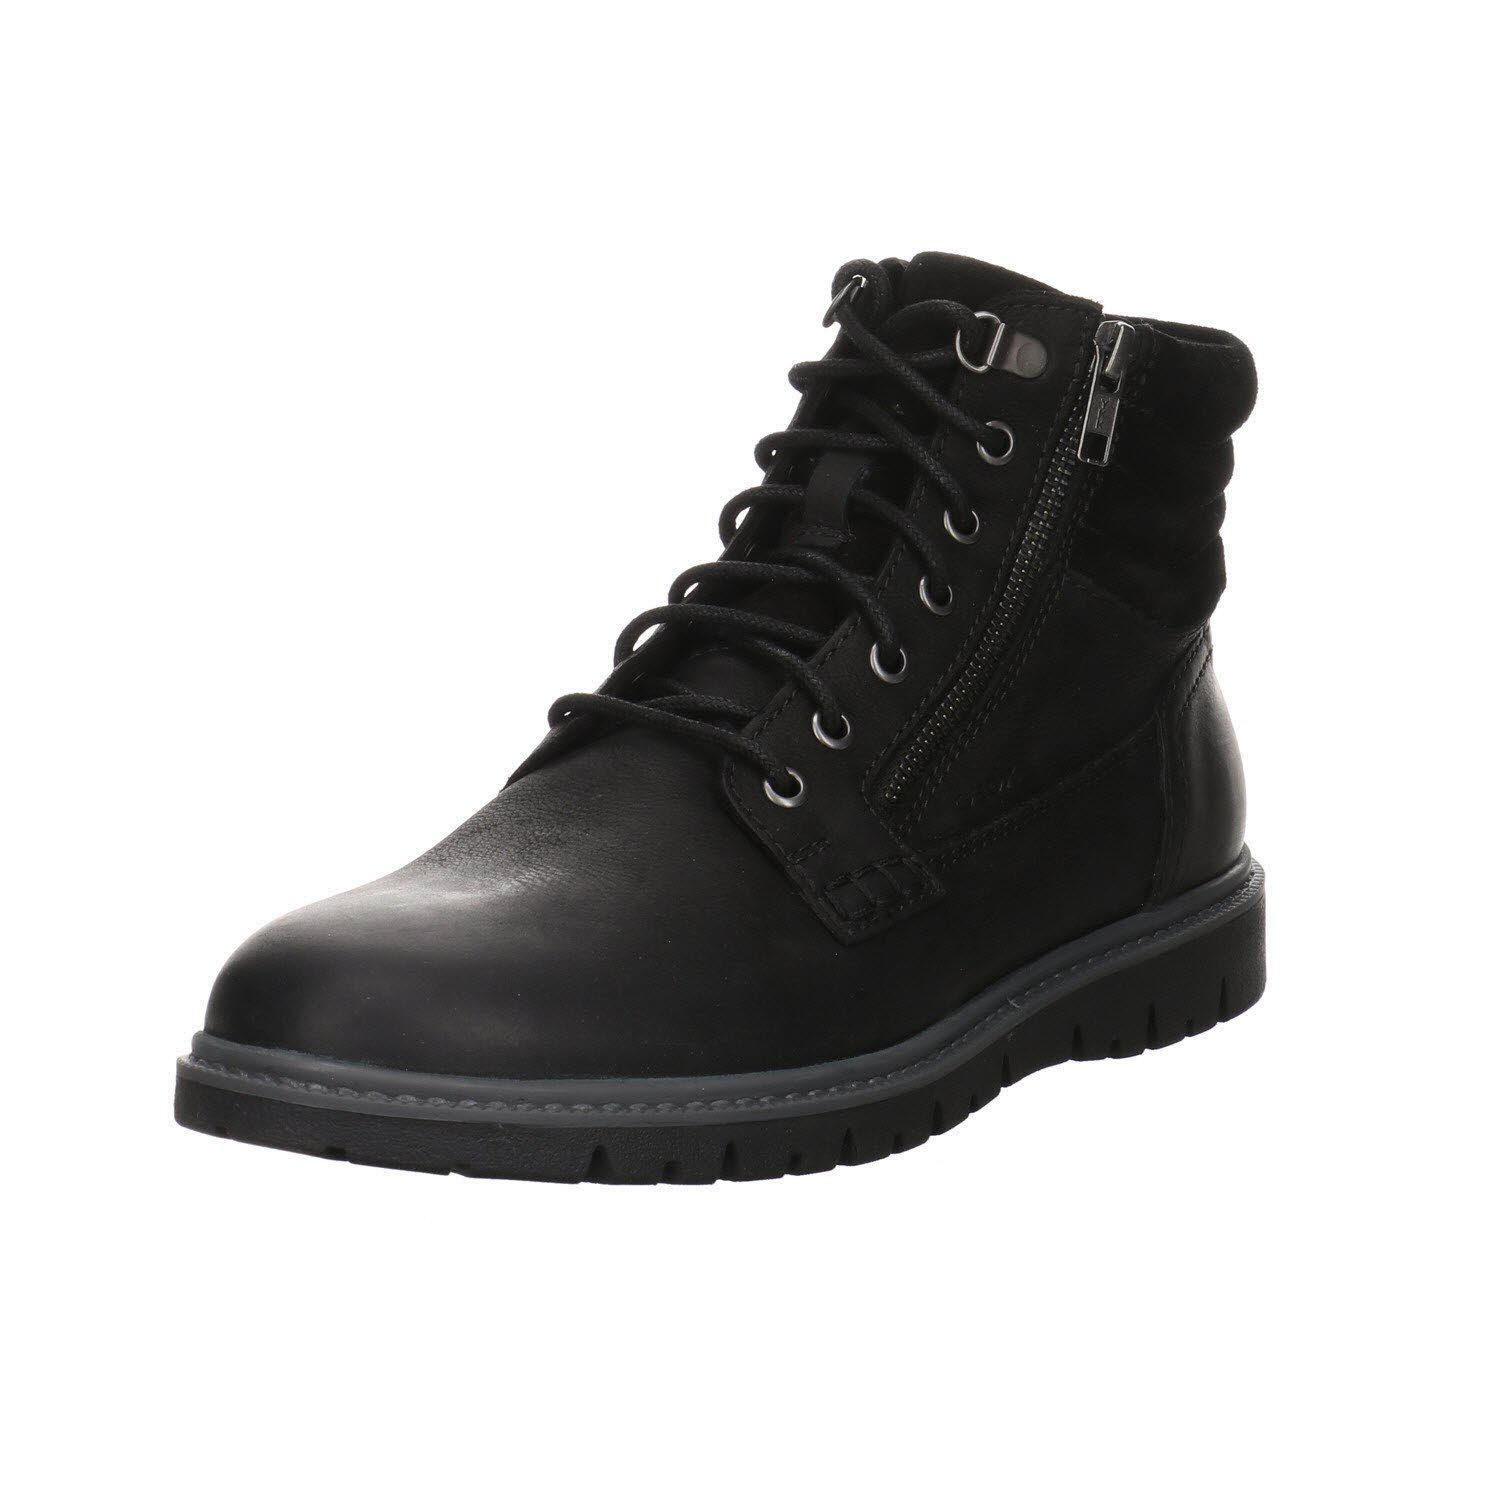 Geox »Herren Stiefel Schuhe Ghiacciaio Boots« Stiefel online kaufen | OTTO